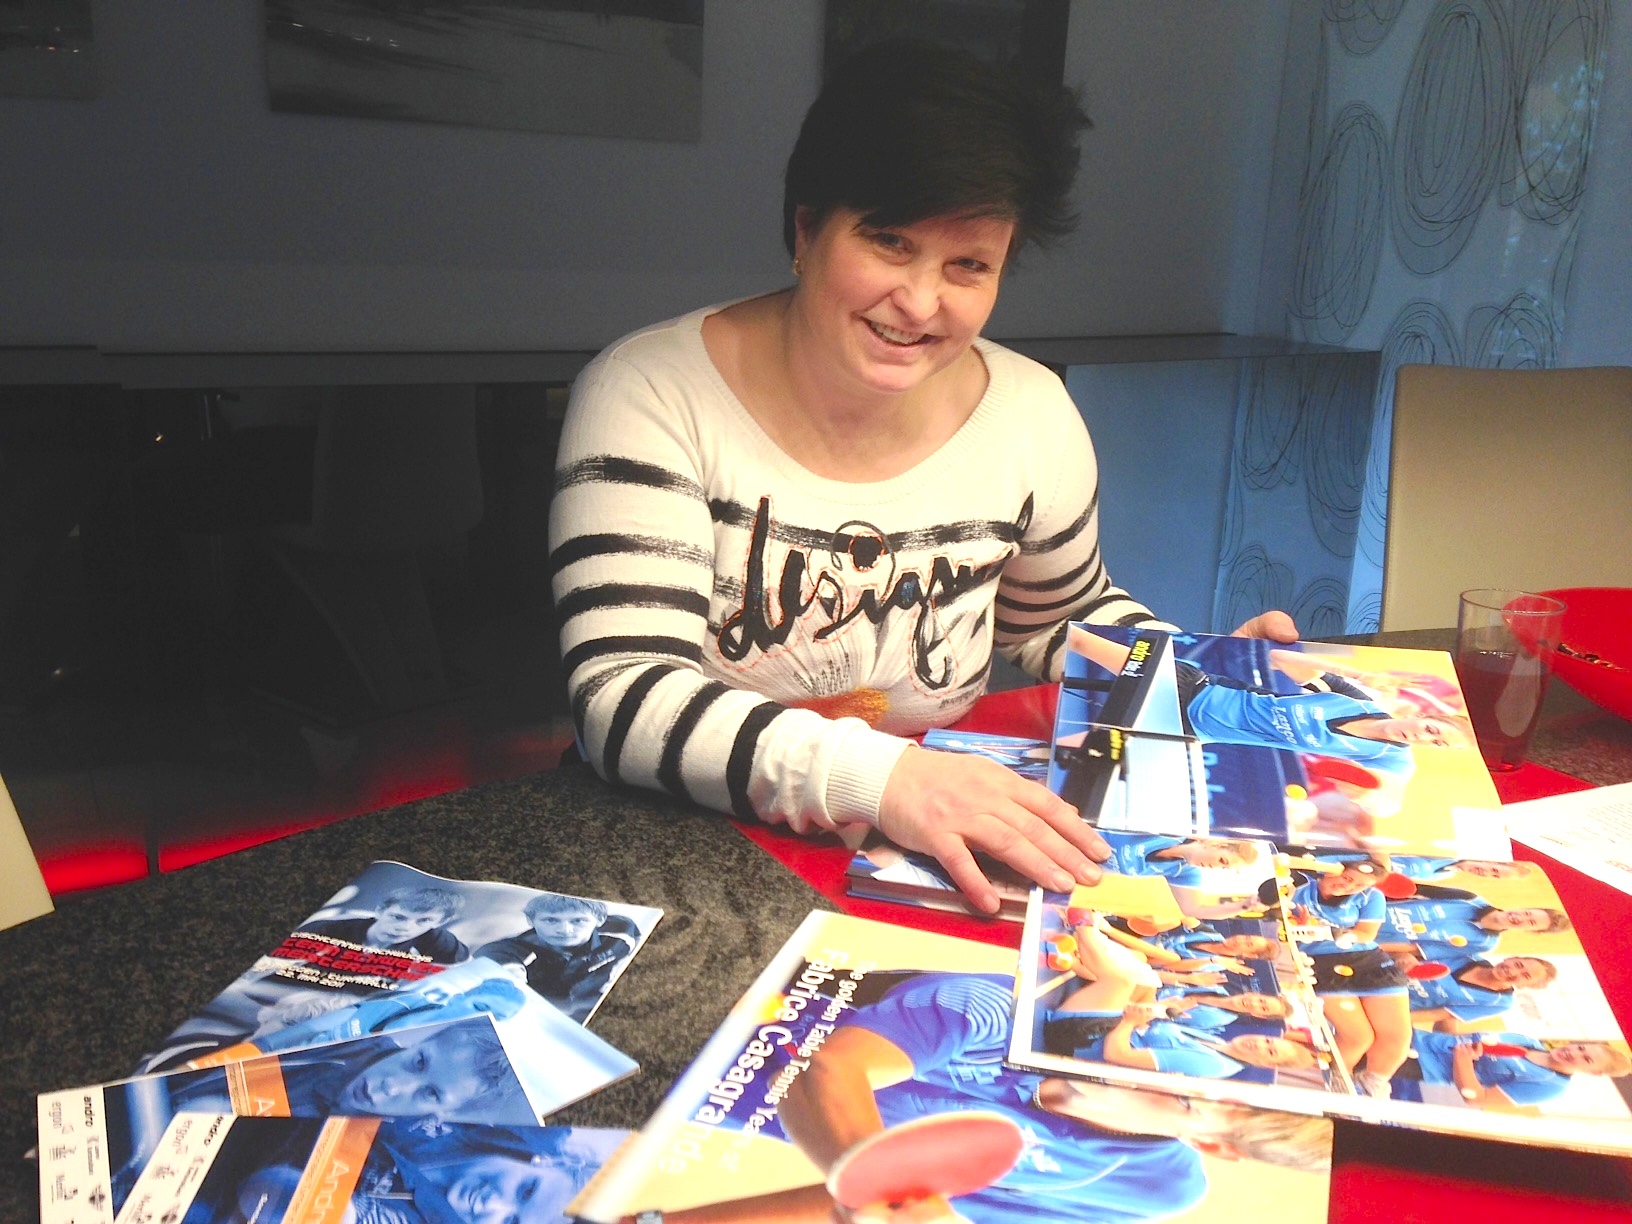 Karin Opprecht bei sich zuhause mit Fotobüchern voller Erinnerungen an das Vereinsleben. (Bild: zentralplus/bas)